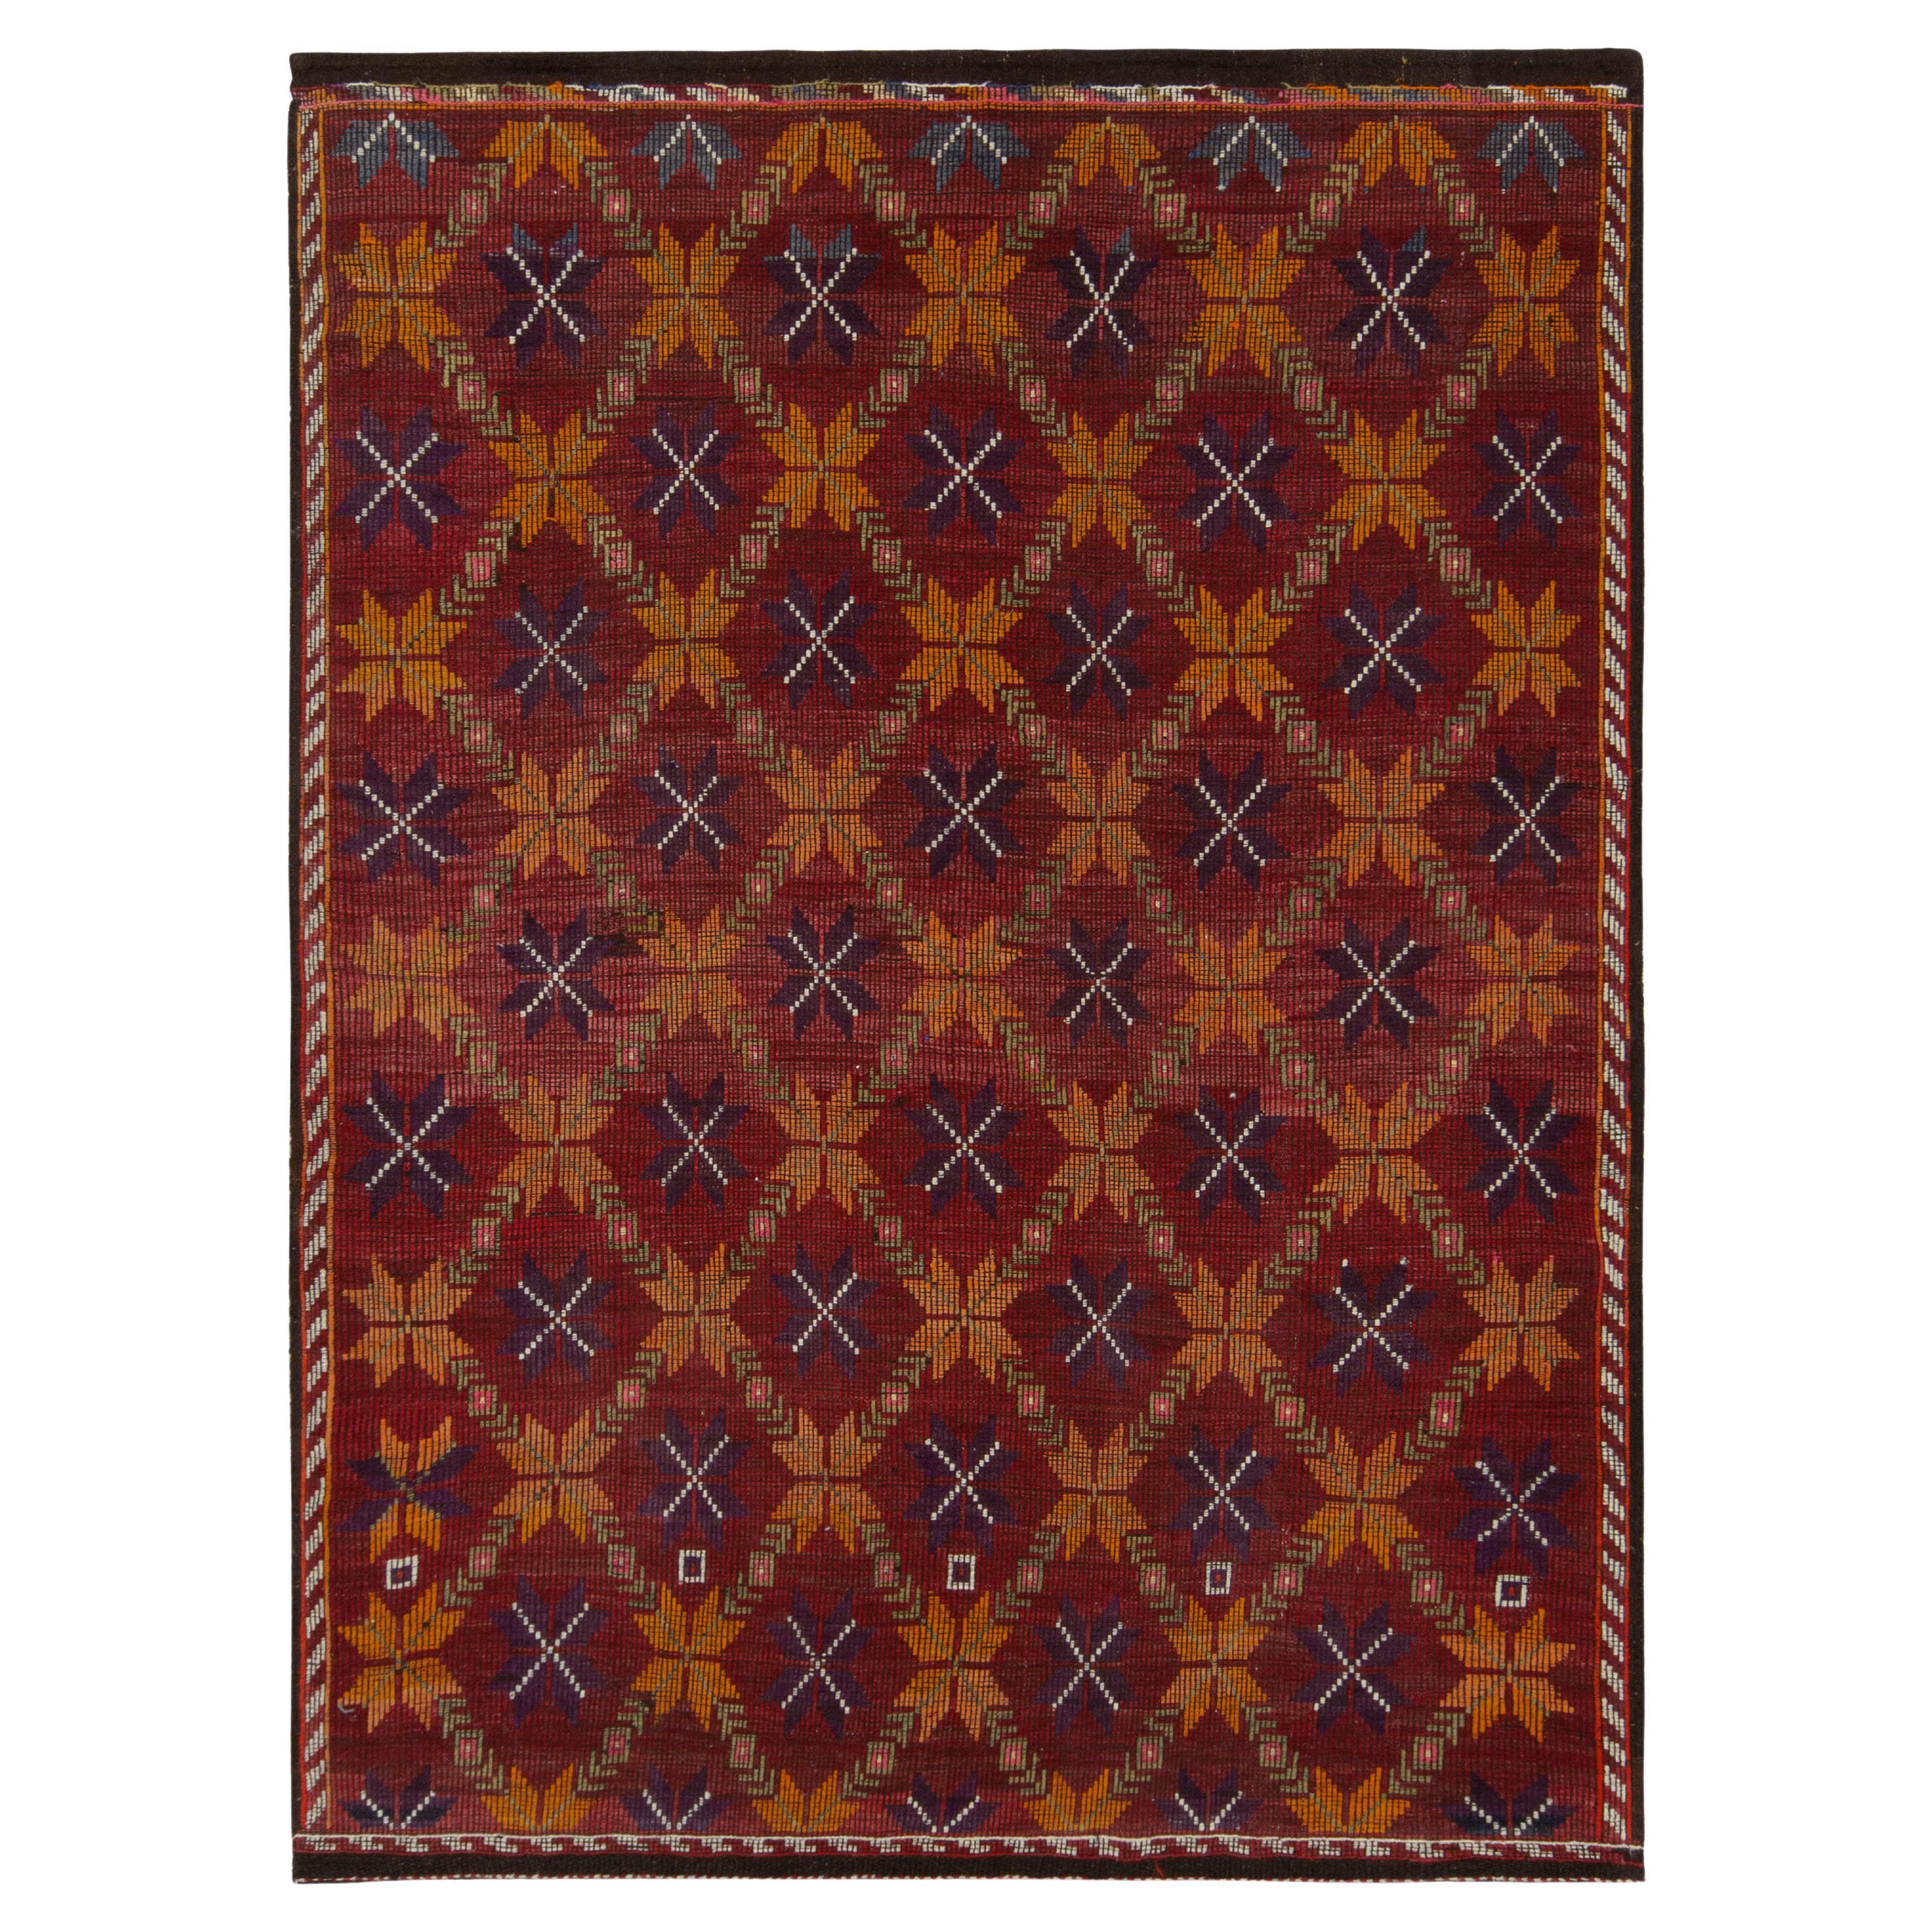 Vintage Cecim Kilim Rug in Red Orange Tribal Geometric Pattern by Rug & Kilim